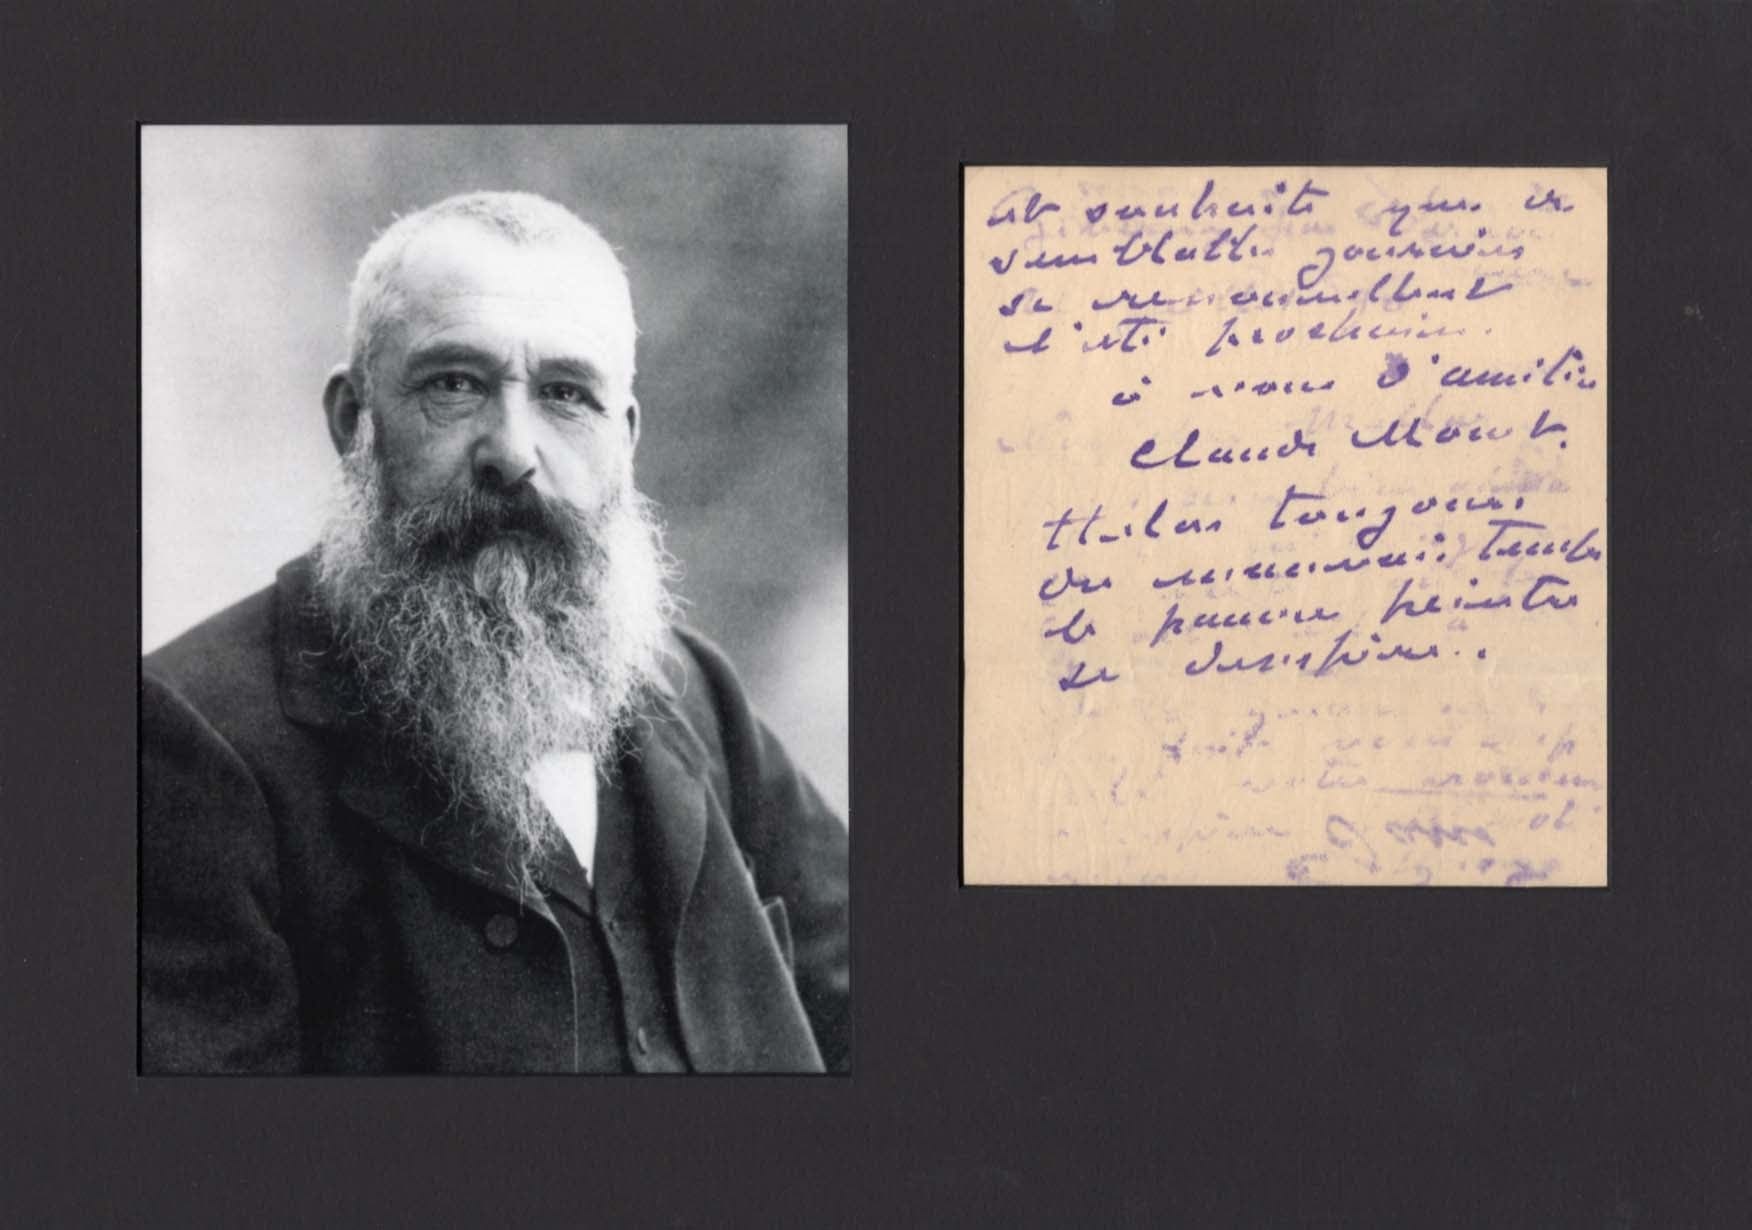 Claude Monet Autograph Autogramm | ID 7816155988117